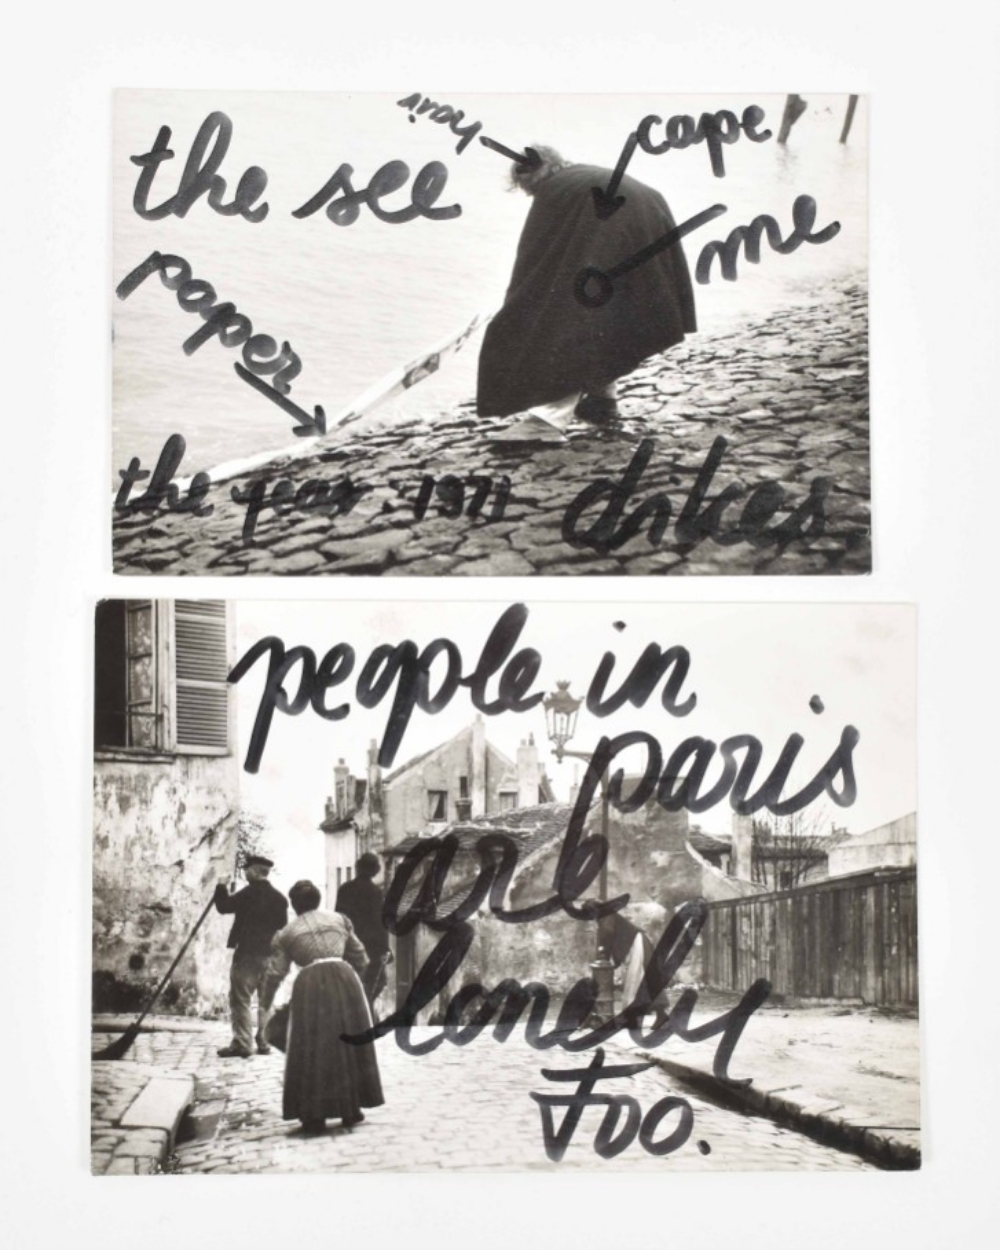 Peter van Beveren mail art postcards, 1975-1979 - Image 5 of 9